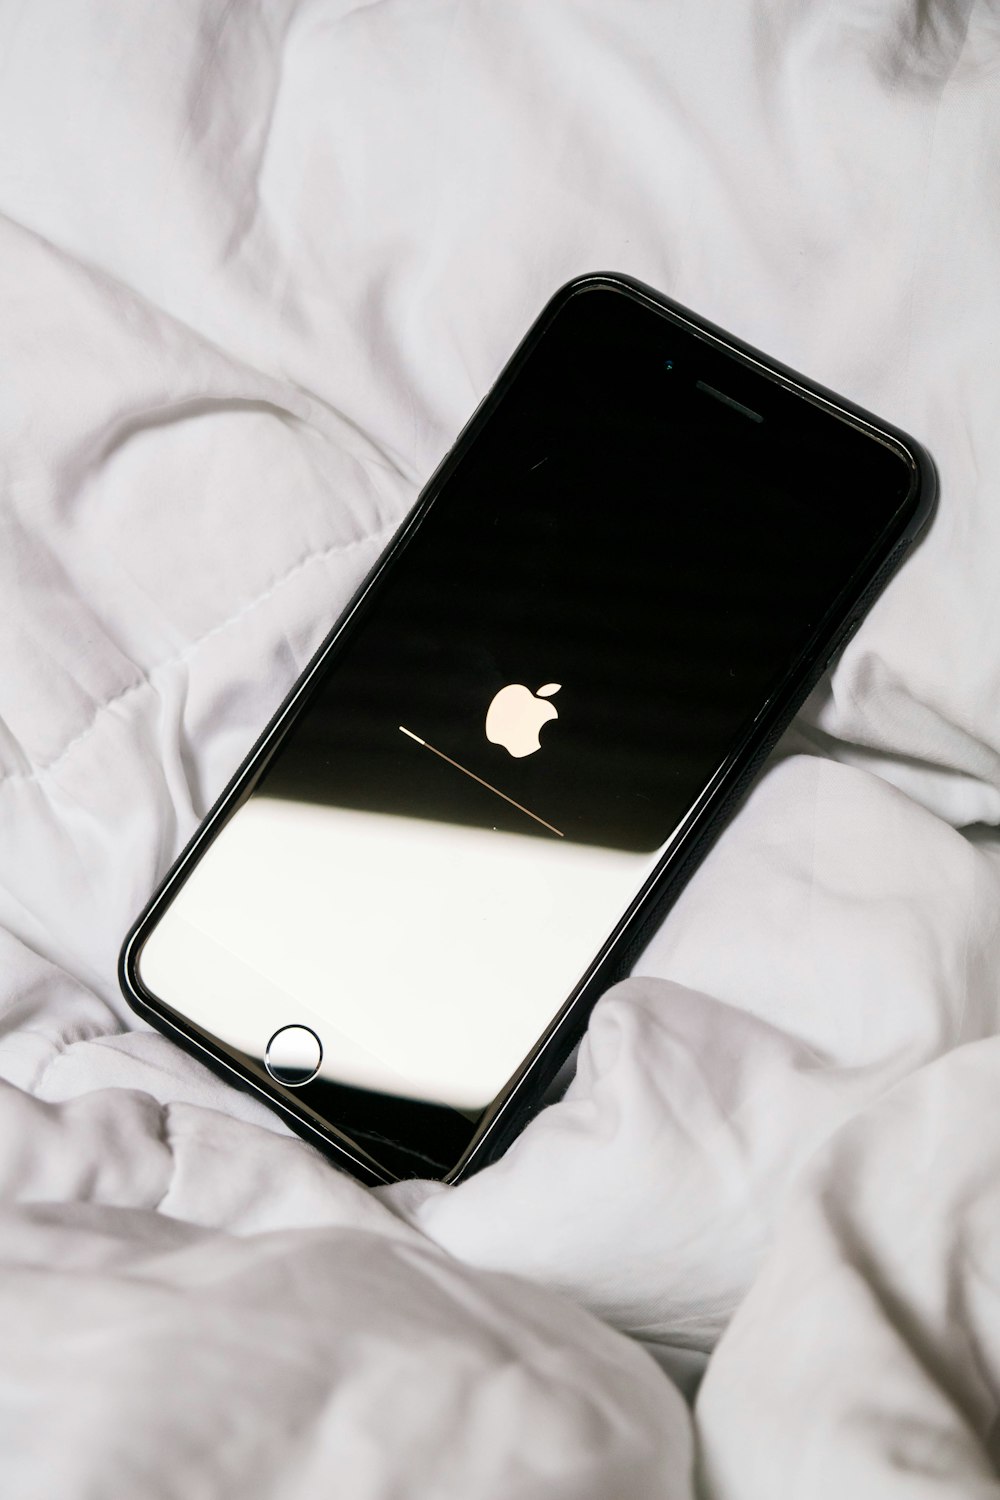 ausgeschaltetes schwarzes iPhone